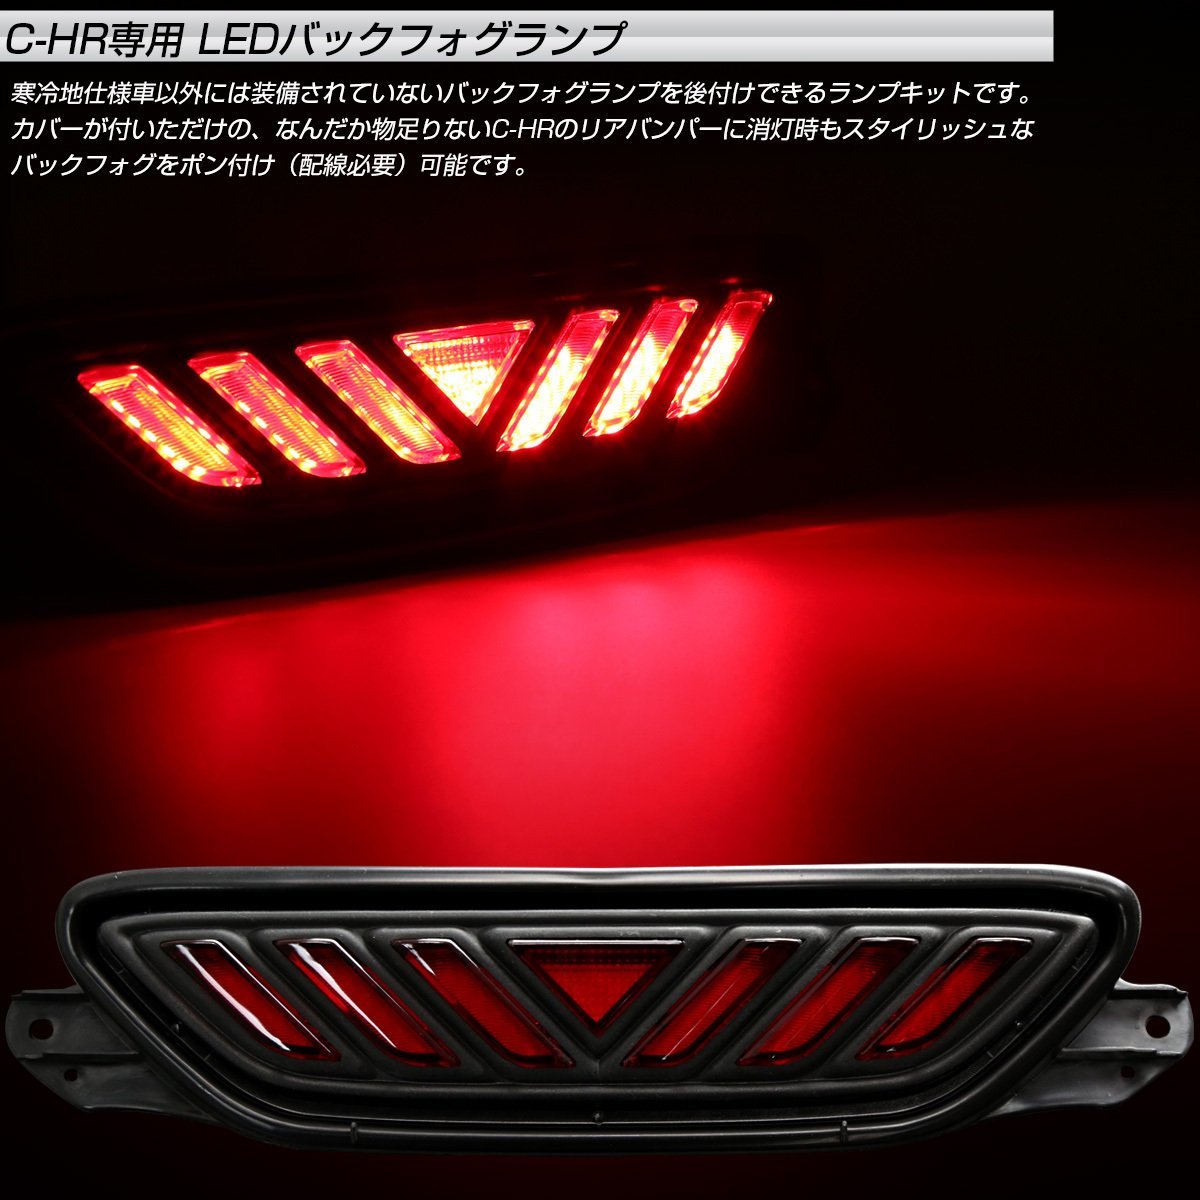 トヨタ C-HR 専用 LED バックフォグ キット リアフォグ ZYX10 NGX50 テールランプ ブレーキランプ連動 P-392_画像2